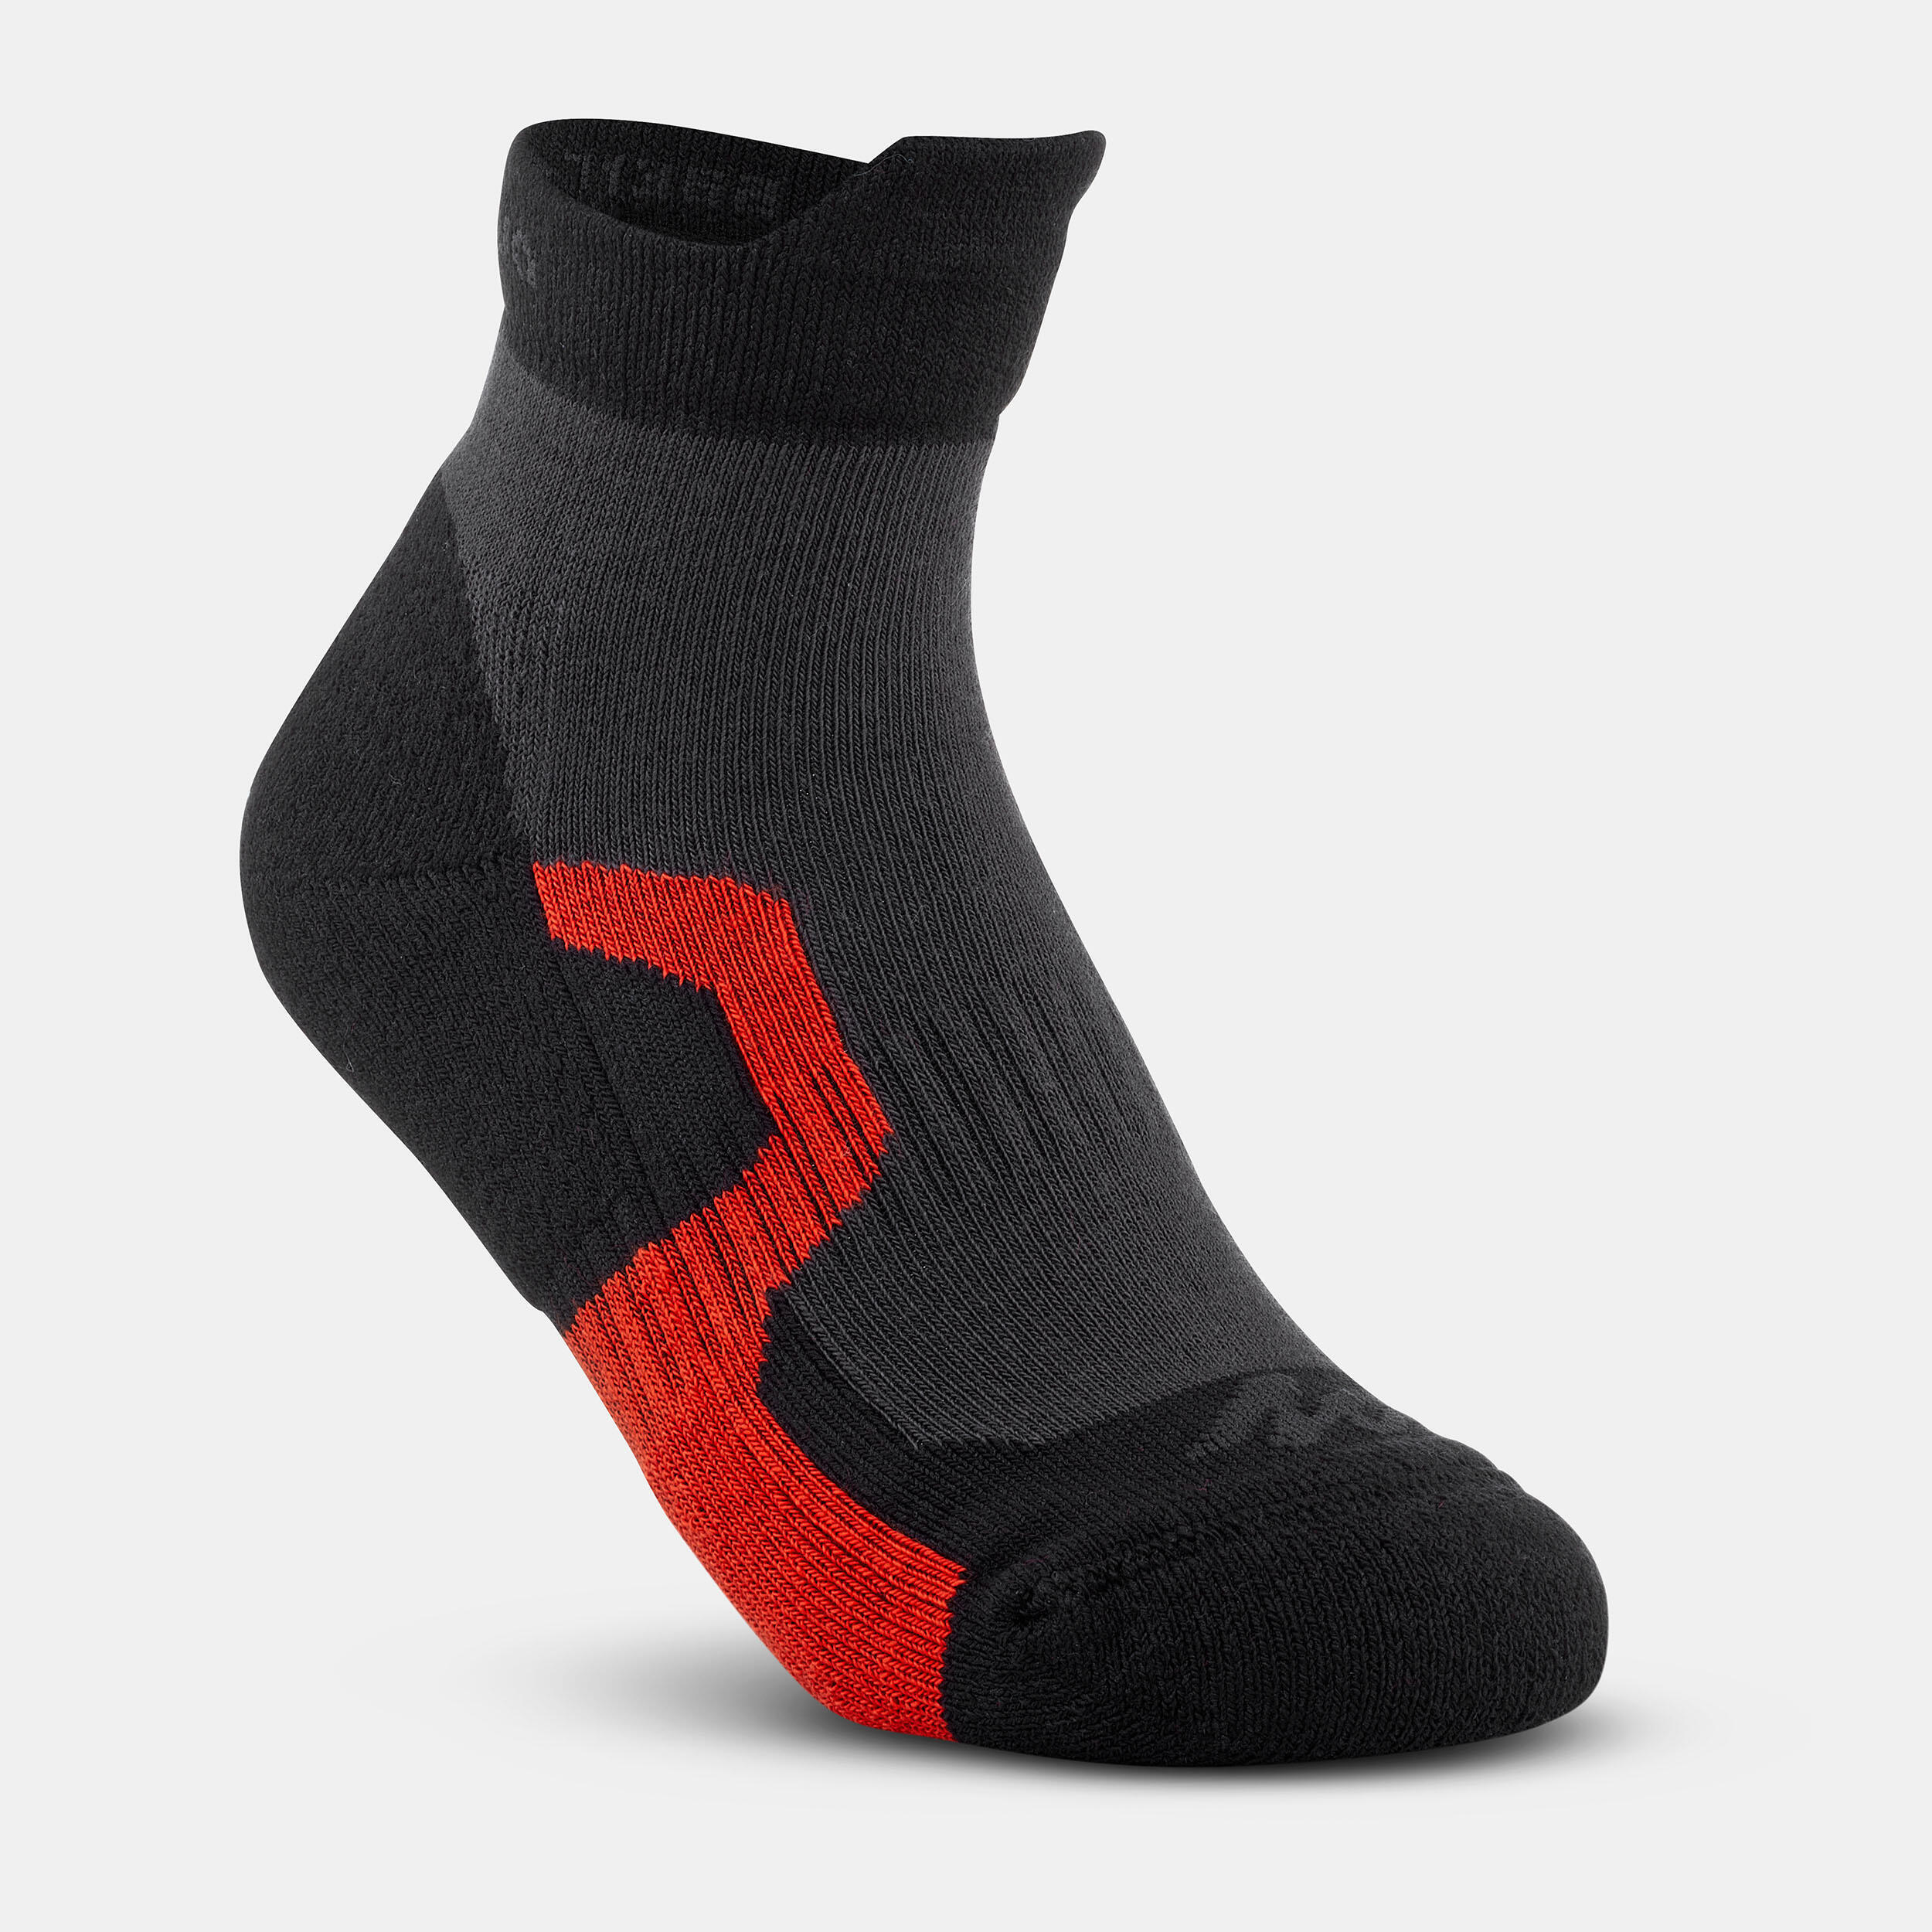 Plush Socks - 2 Pairs - Indigo Bay